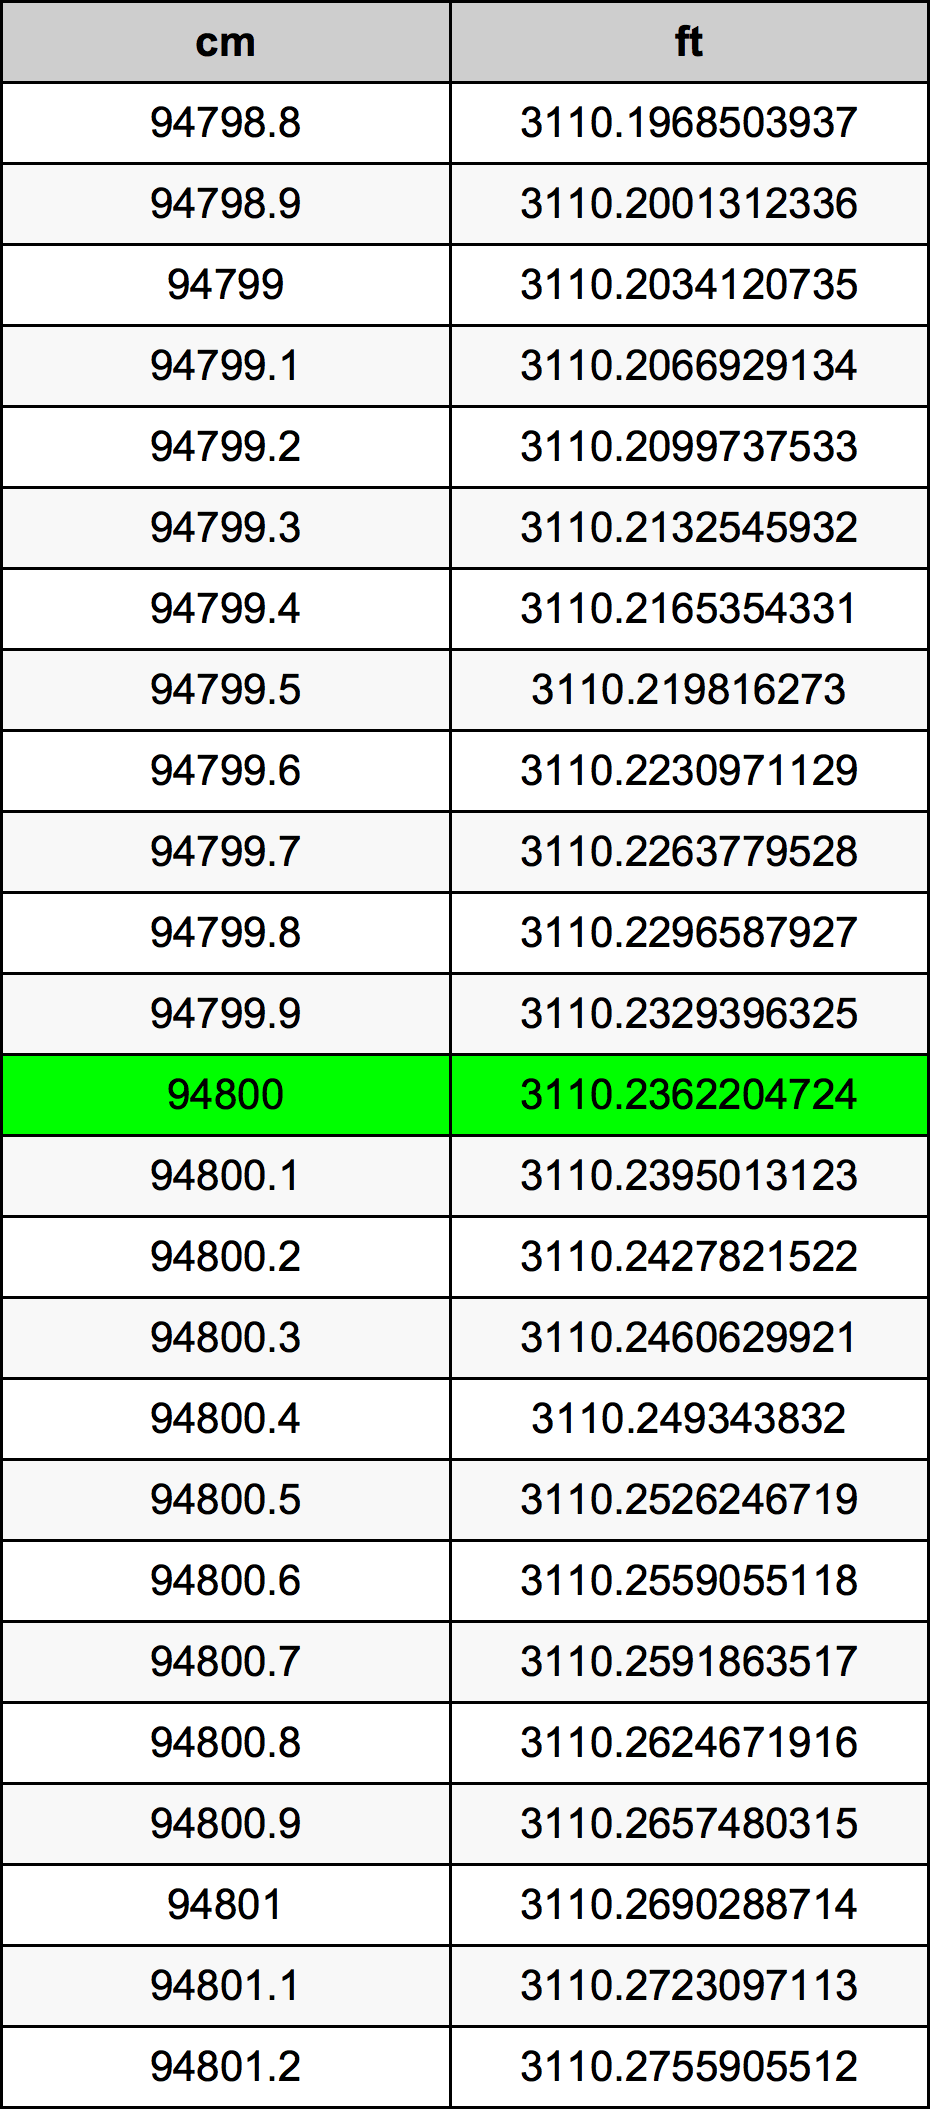 94800 ċentimetru konverżjoni tabella